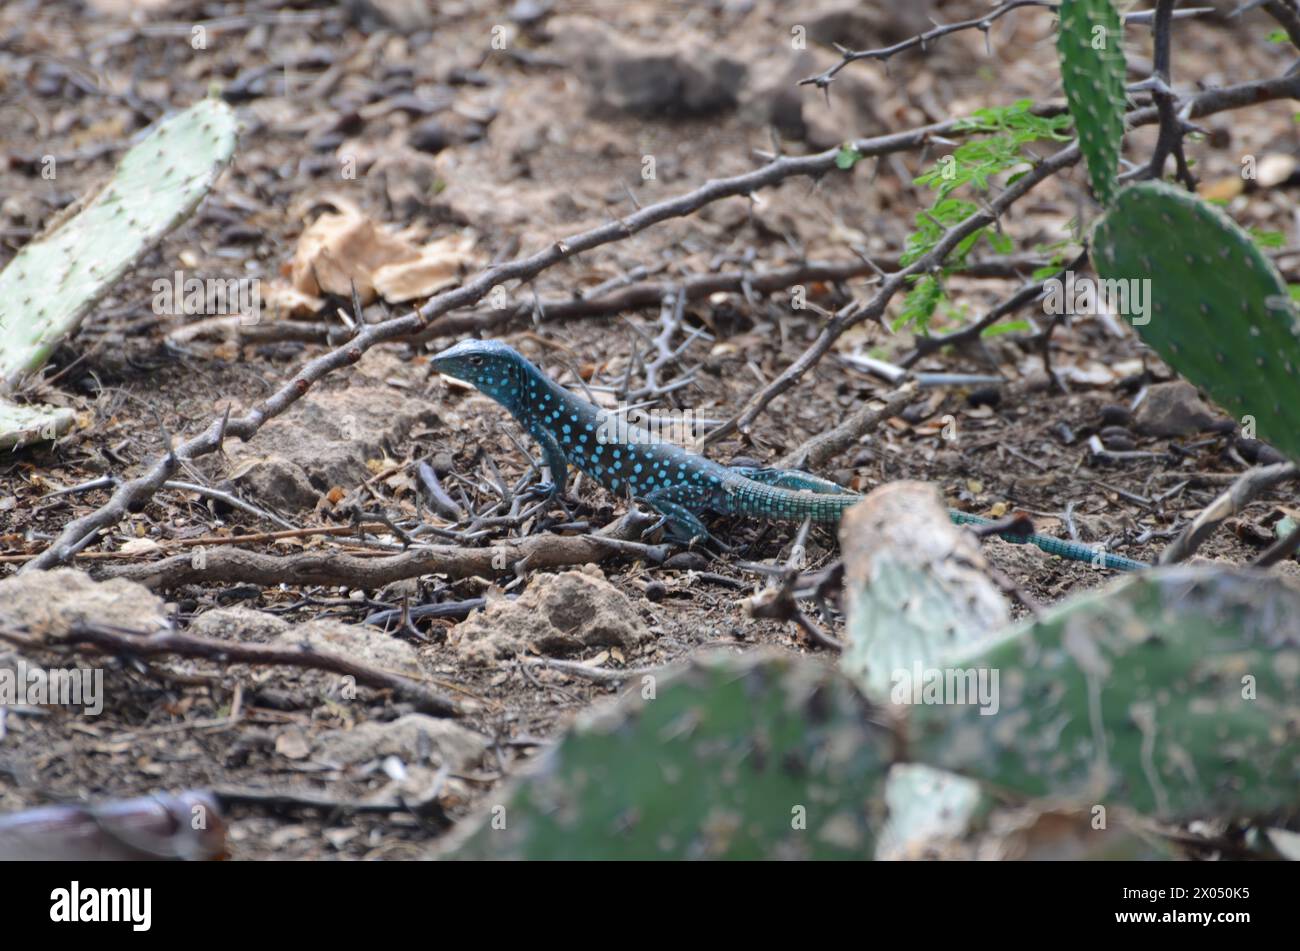 Un lagarto está tendido en el suelo en una zona rocosa. El lagarto es de color azul y verde Foto de stock